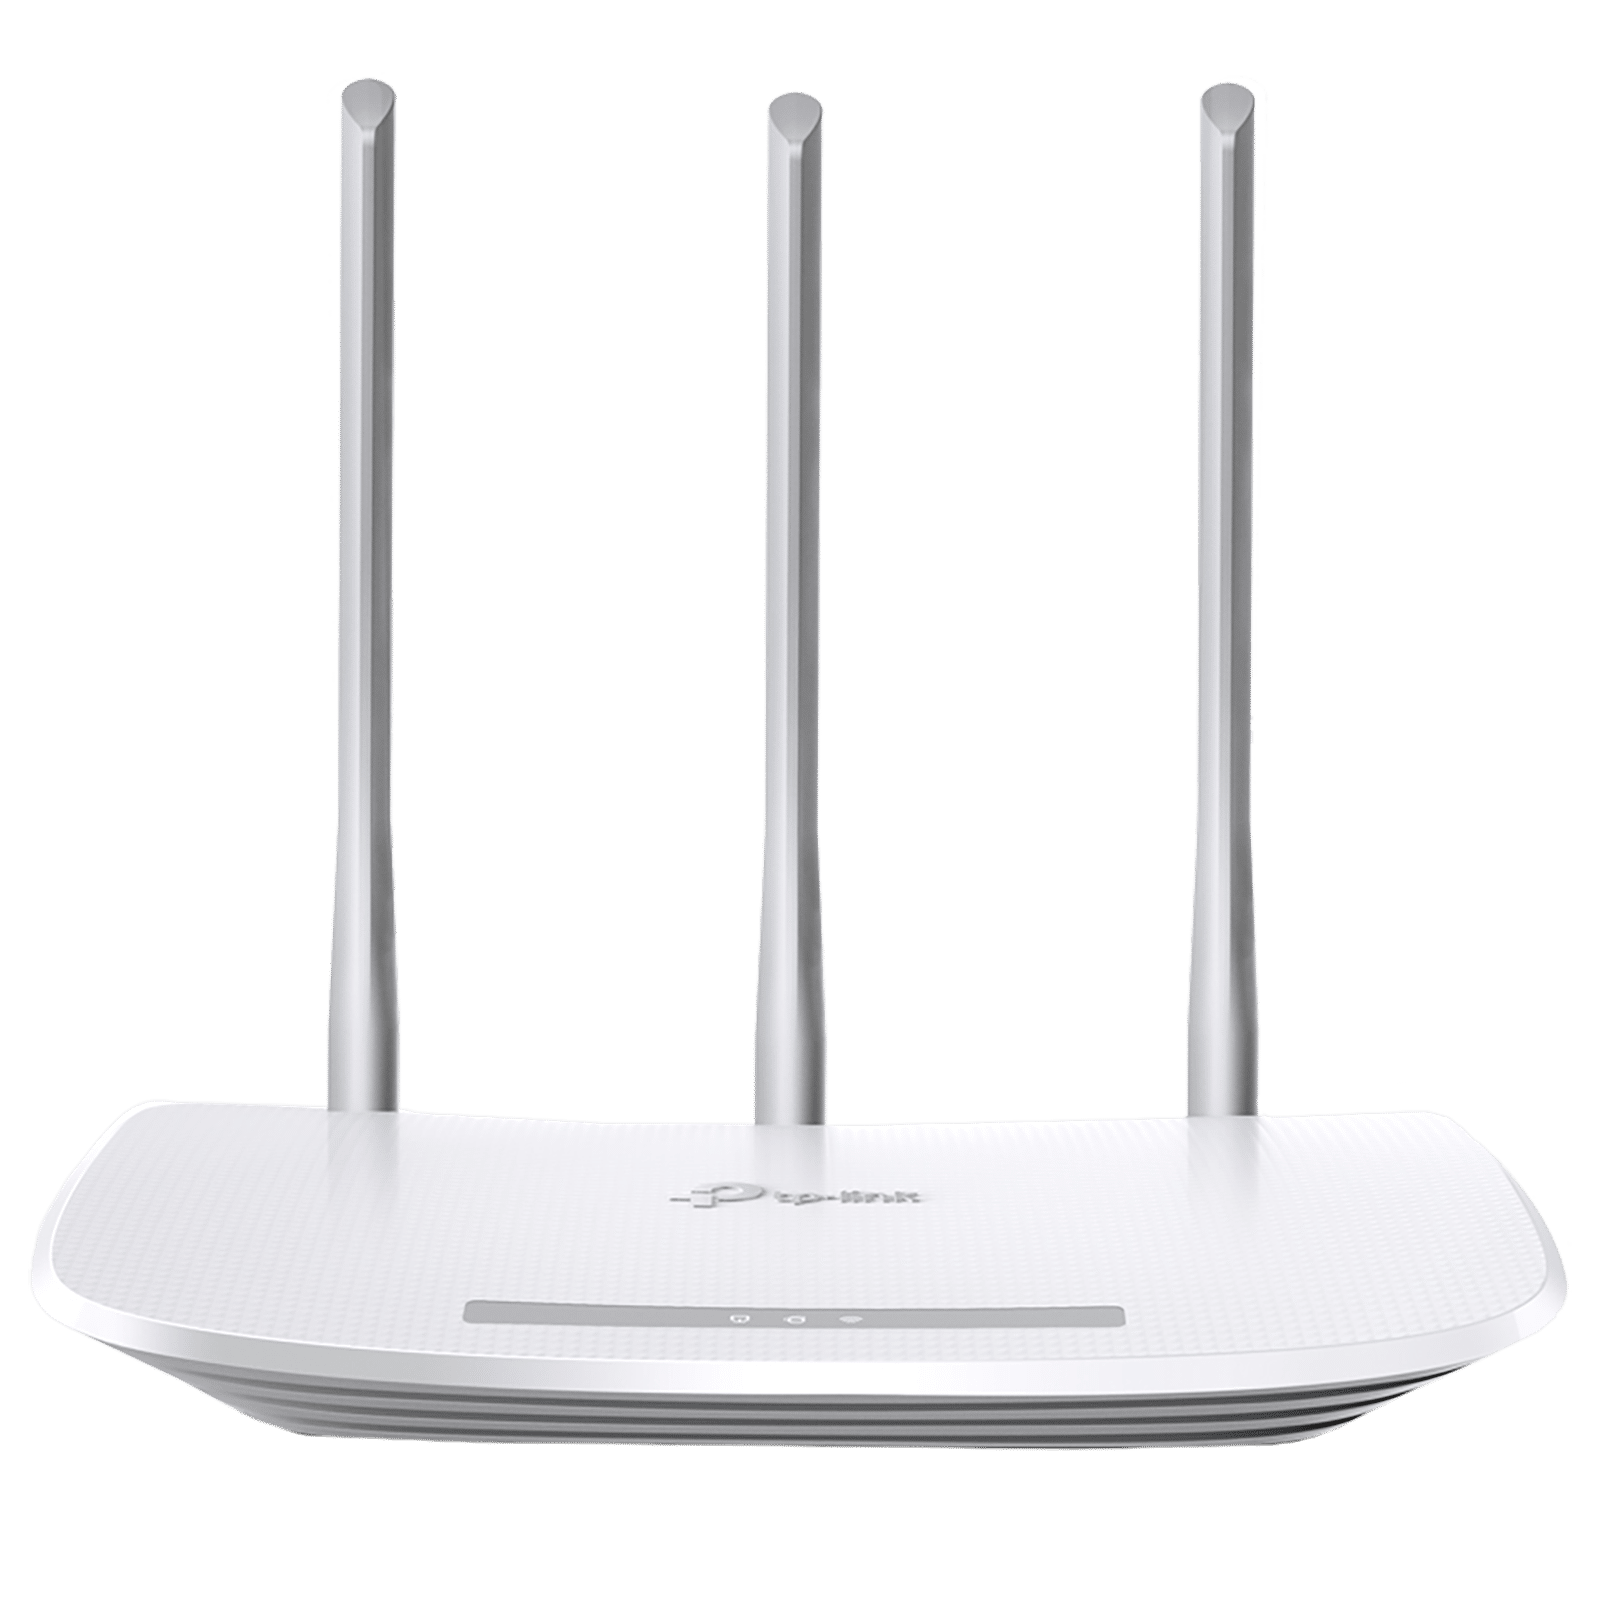 Buy Tp-Link TL-WR845N N300 Single Band Wi-Fi Router (3 Antennas, 4 LAN ...